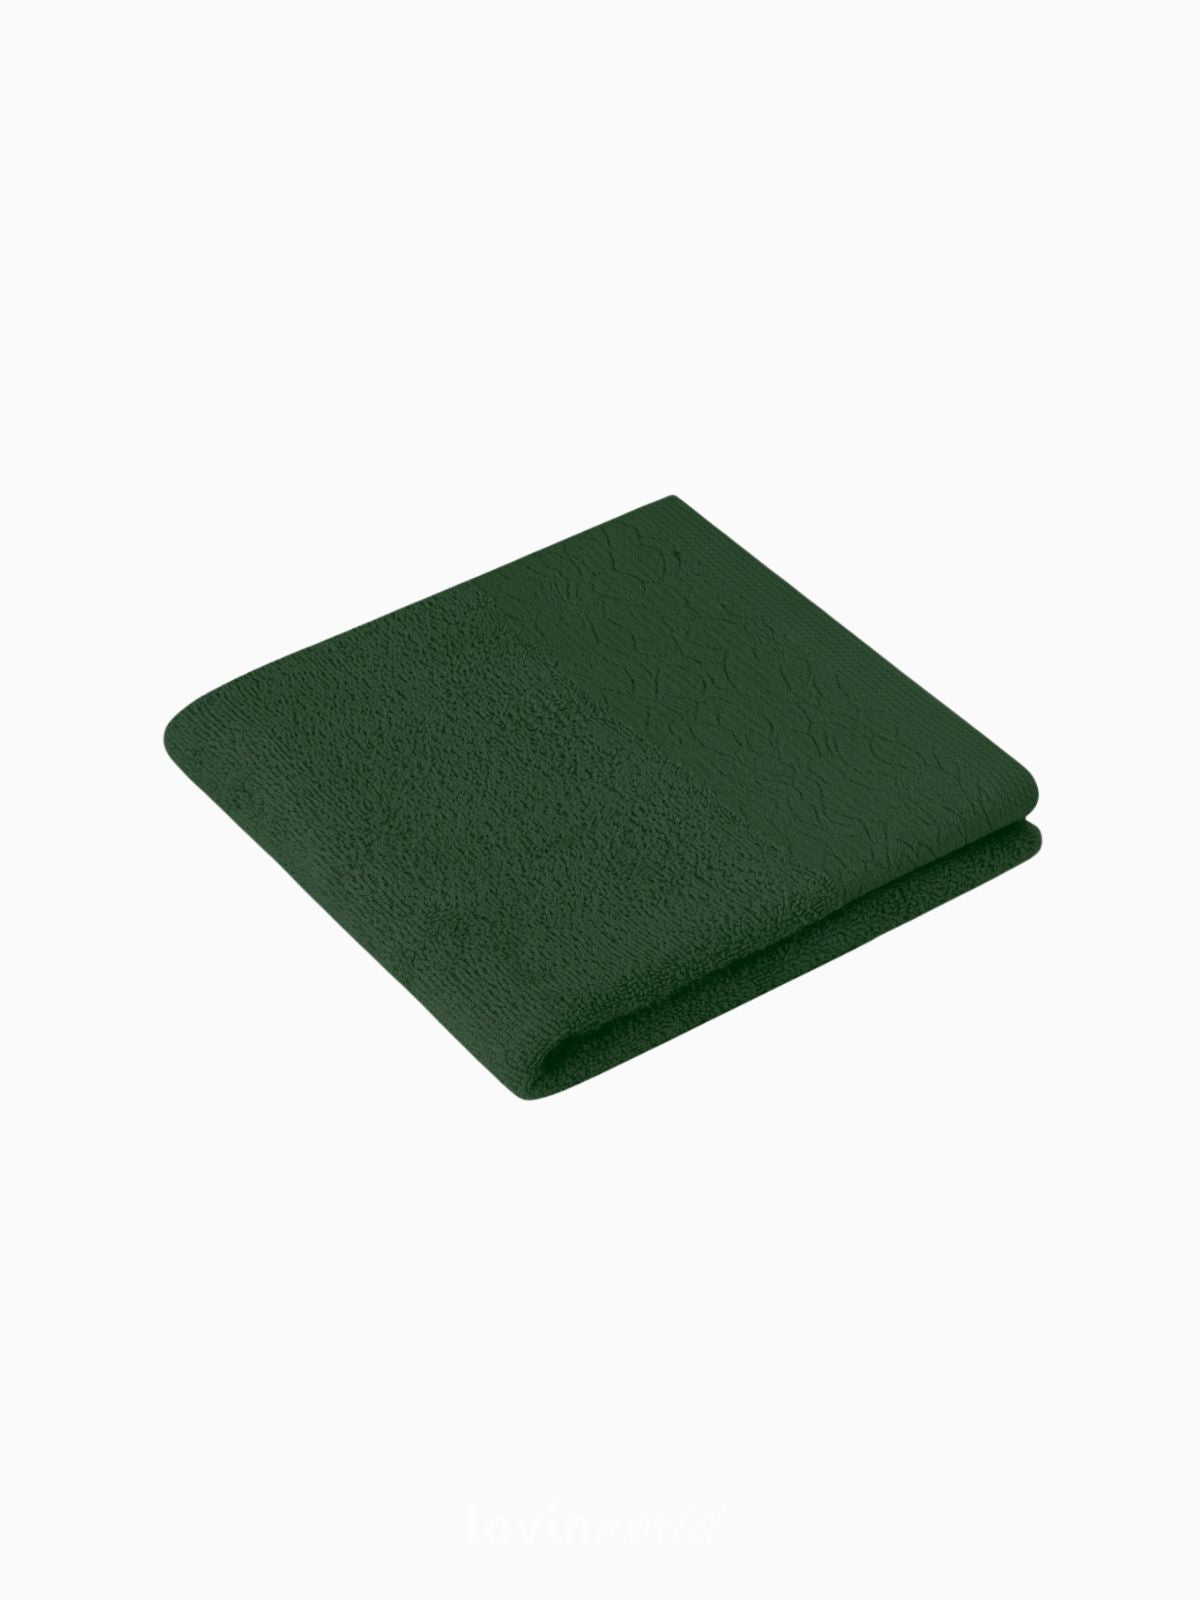 Set 6 Asciugamani da bagno Flos in 100% cotone, colore verde chiaro e scuro-3